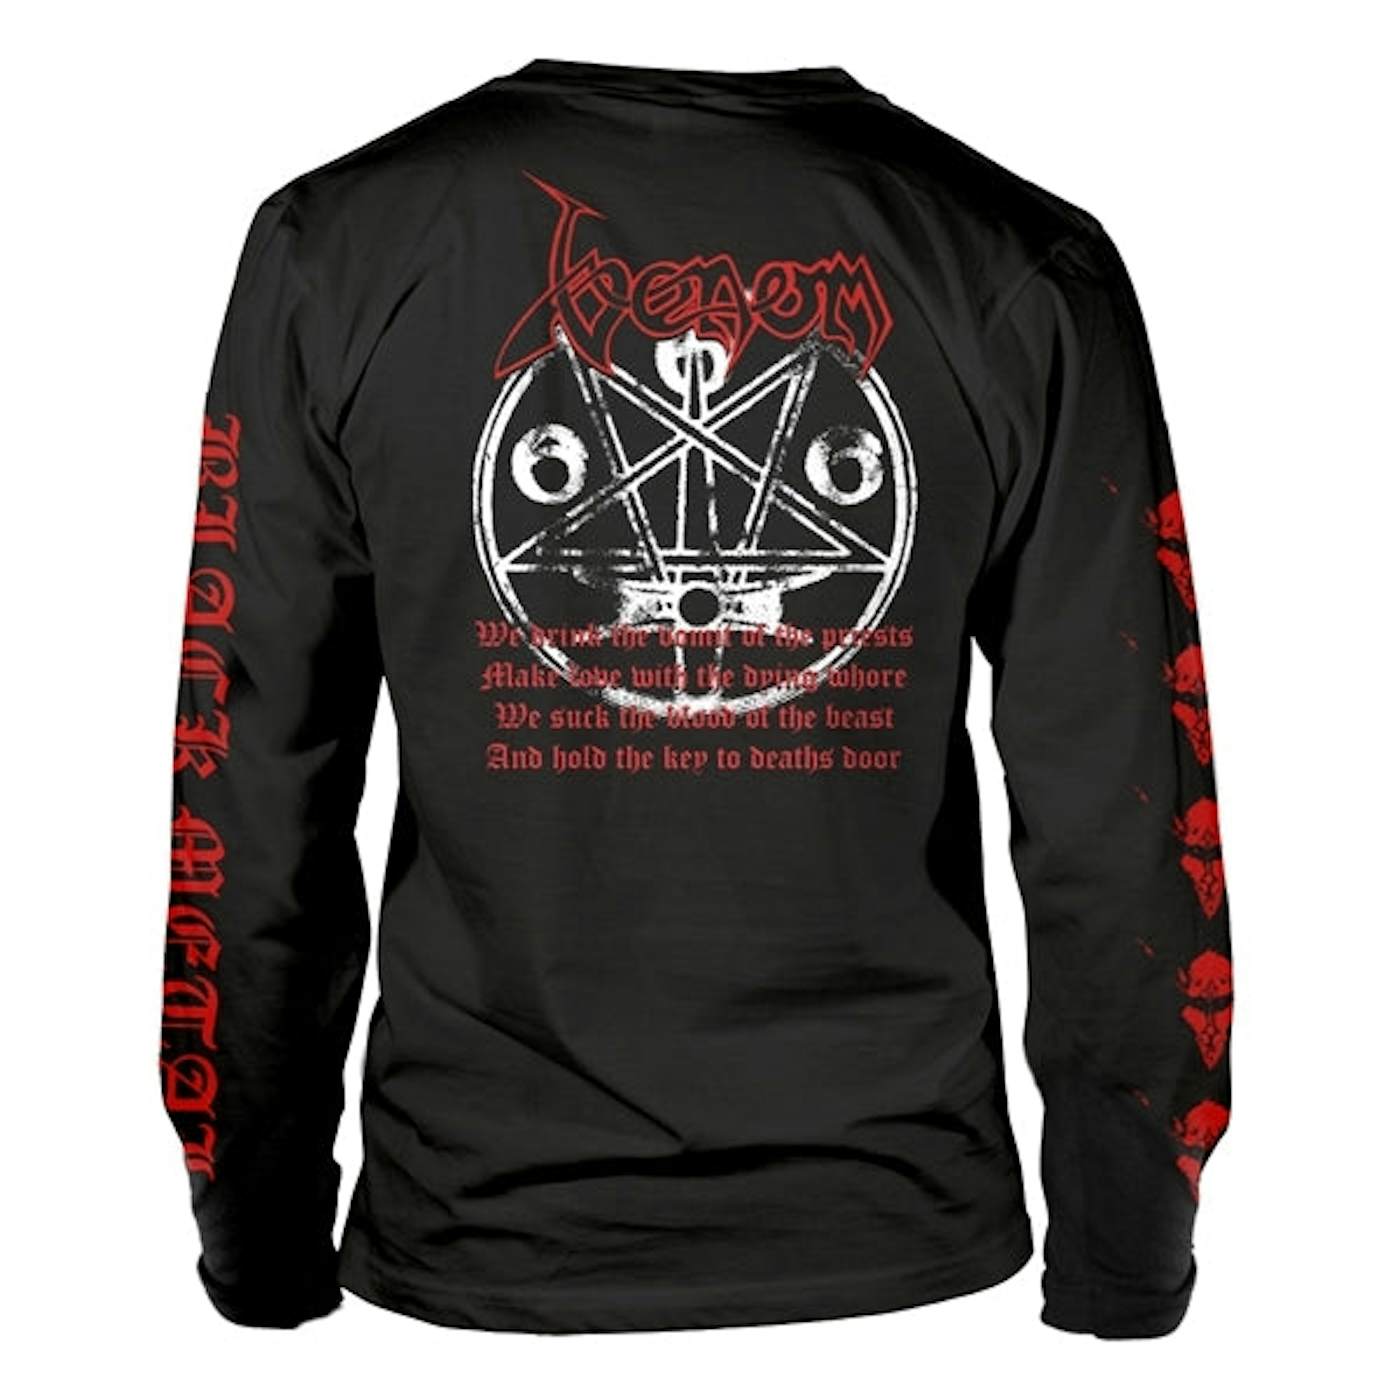  Venom Long Sleeve T Shirt - Black Metal (Red)